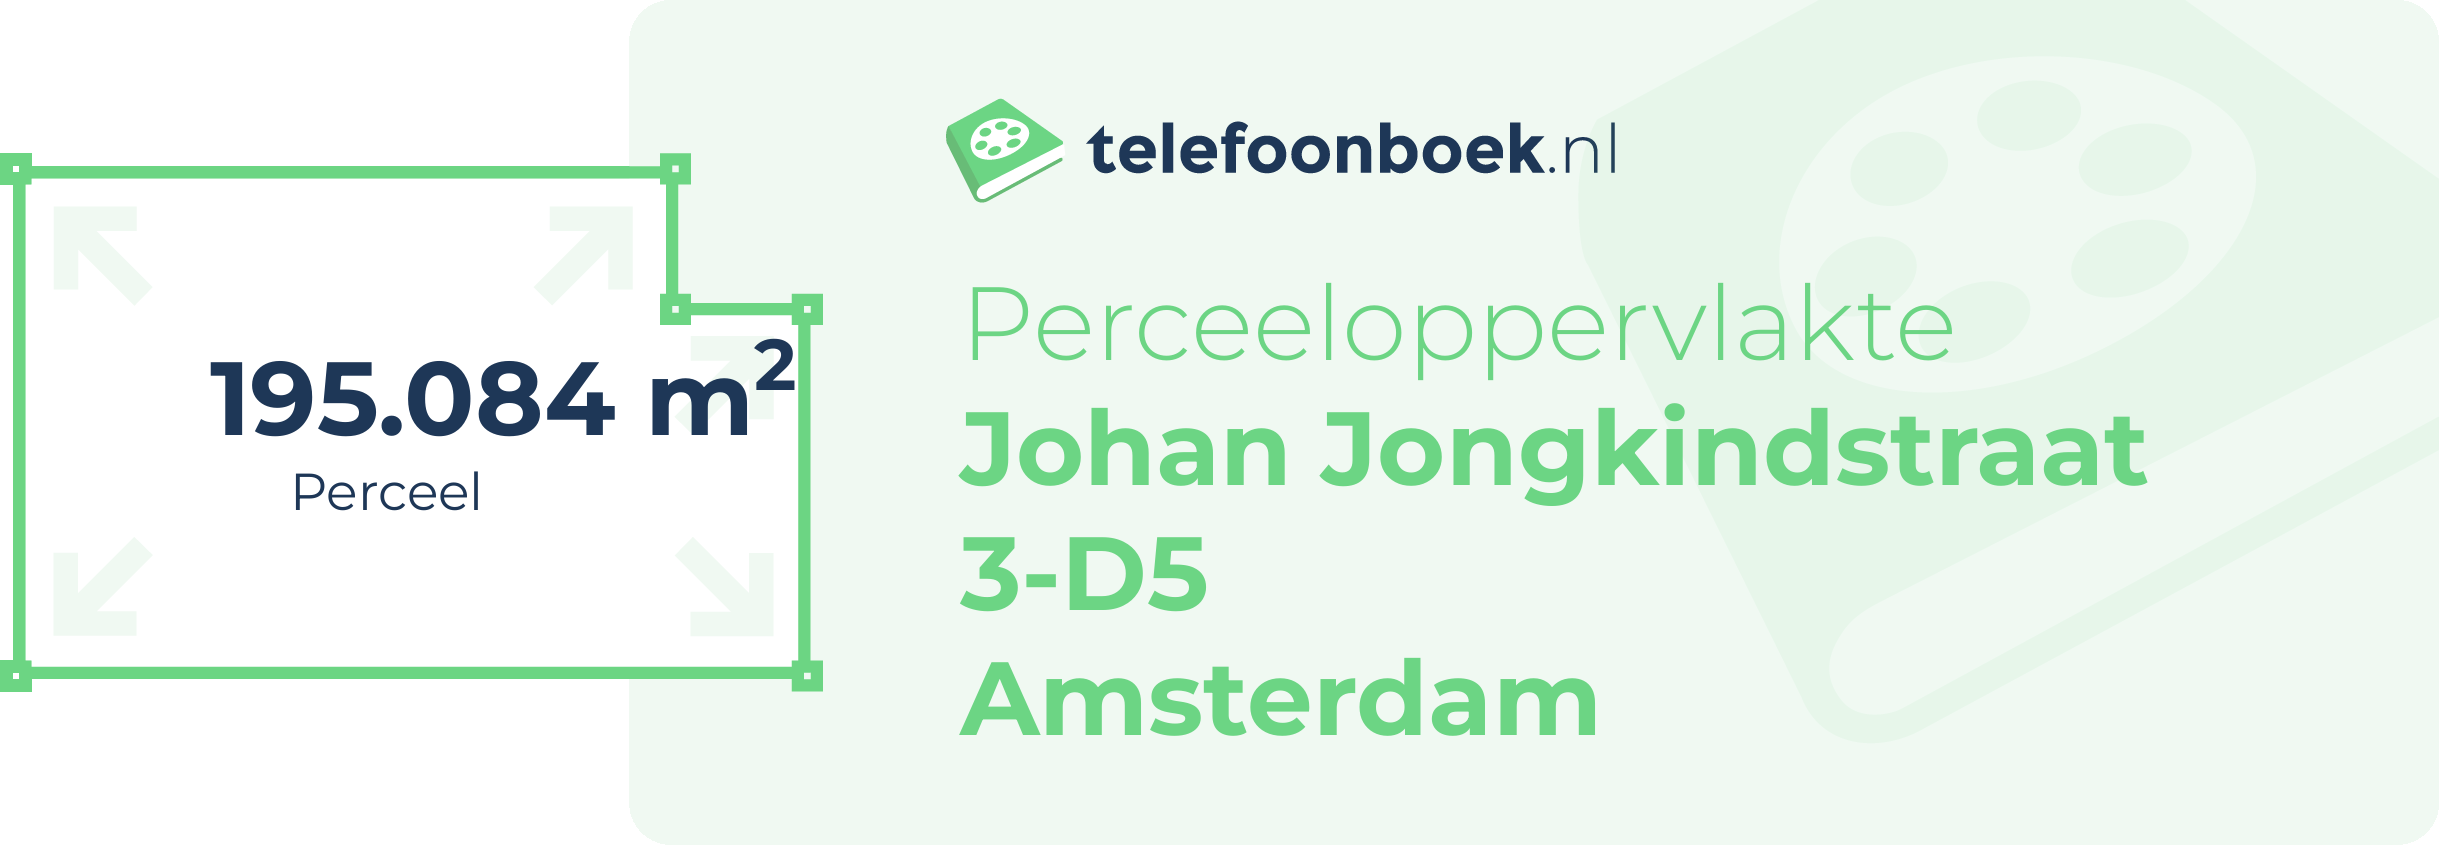 Perceeloppervlakte Johan Jongkindstraat 3-D5 Amsterdam